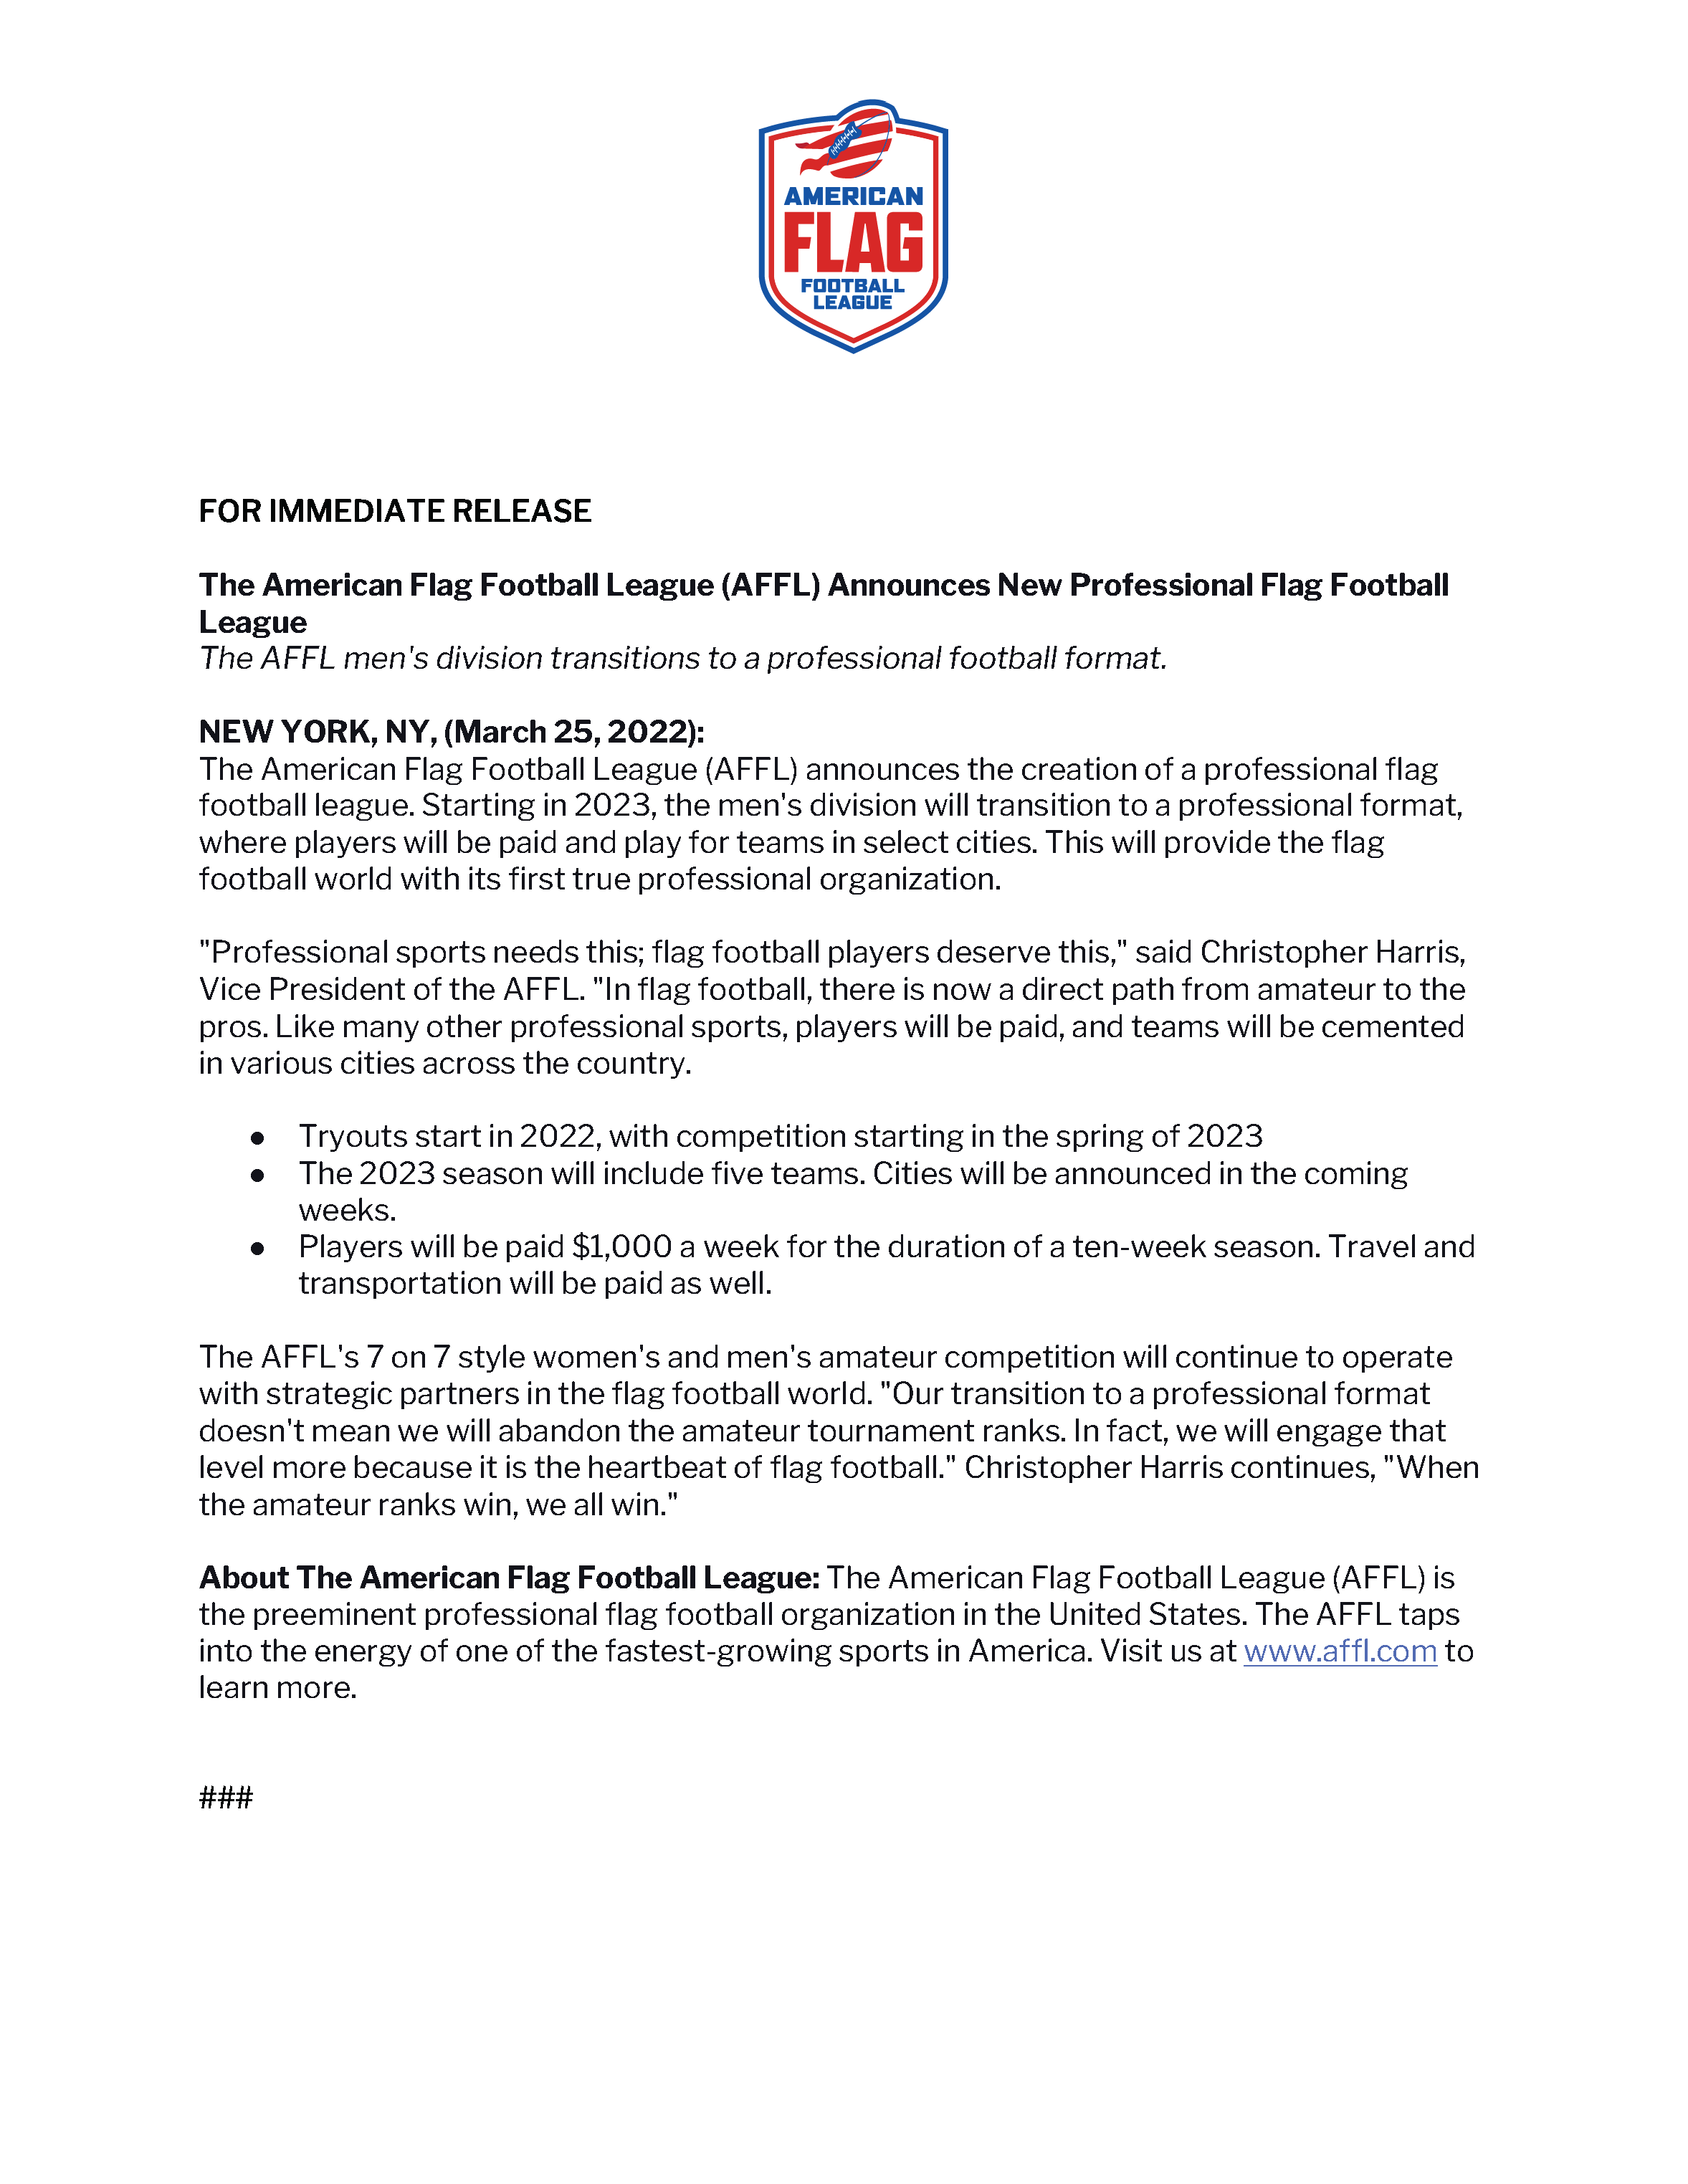 AFFL - Pro League Announcement